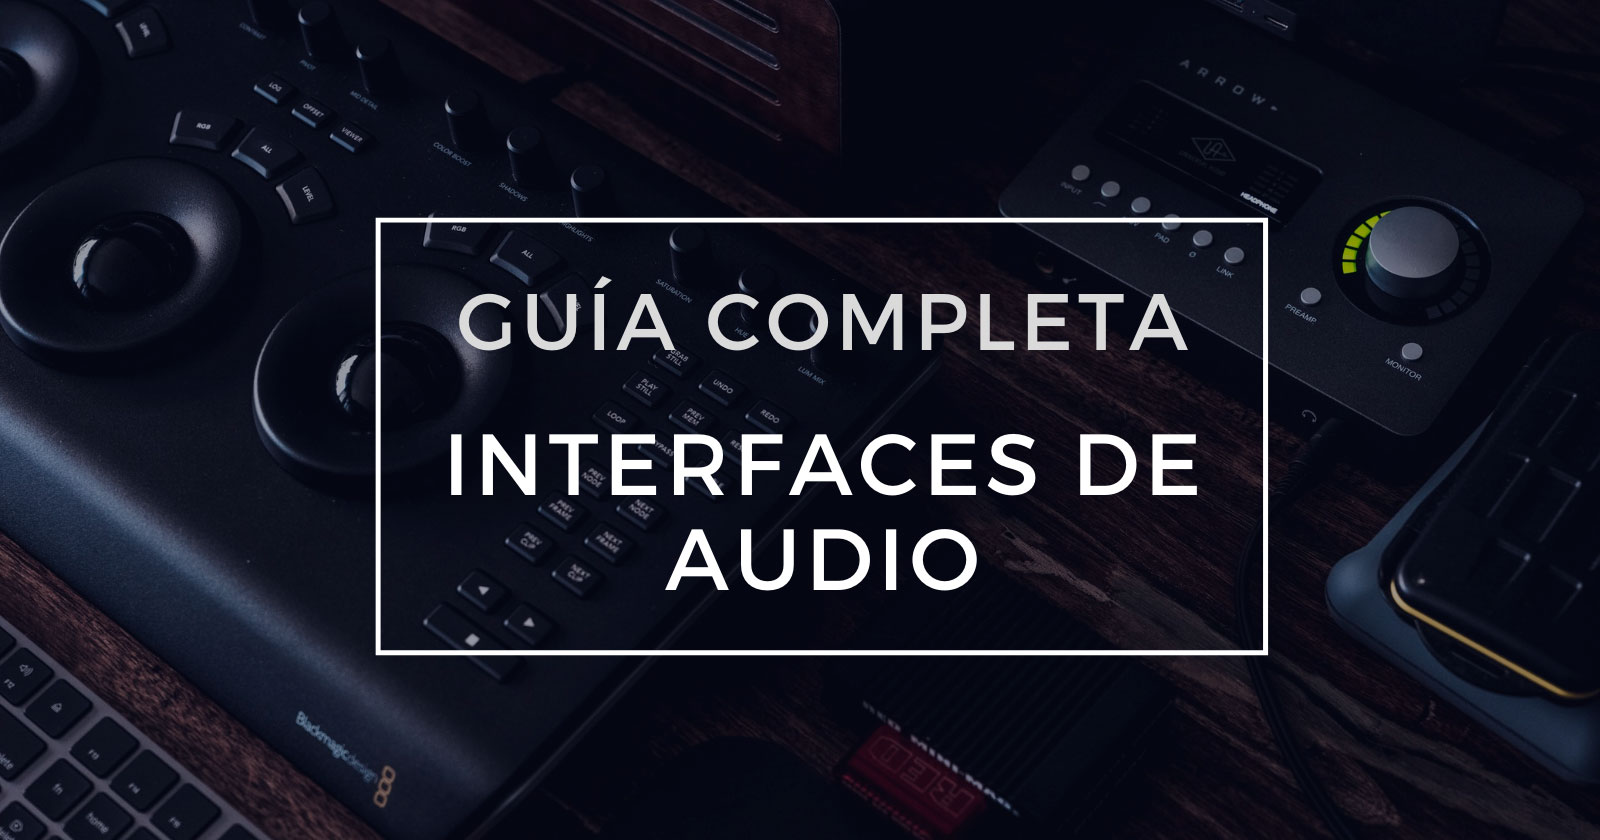 Qué es una Interfaz de Audio y para qué sirve? Guía completa